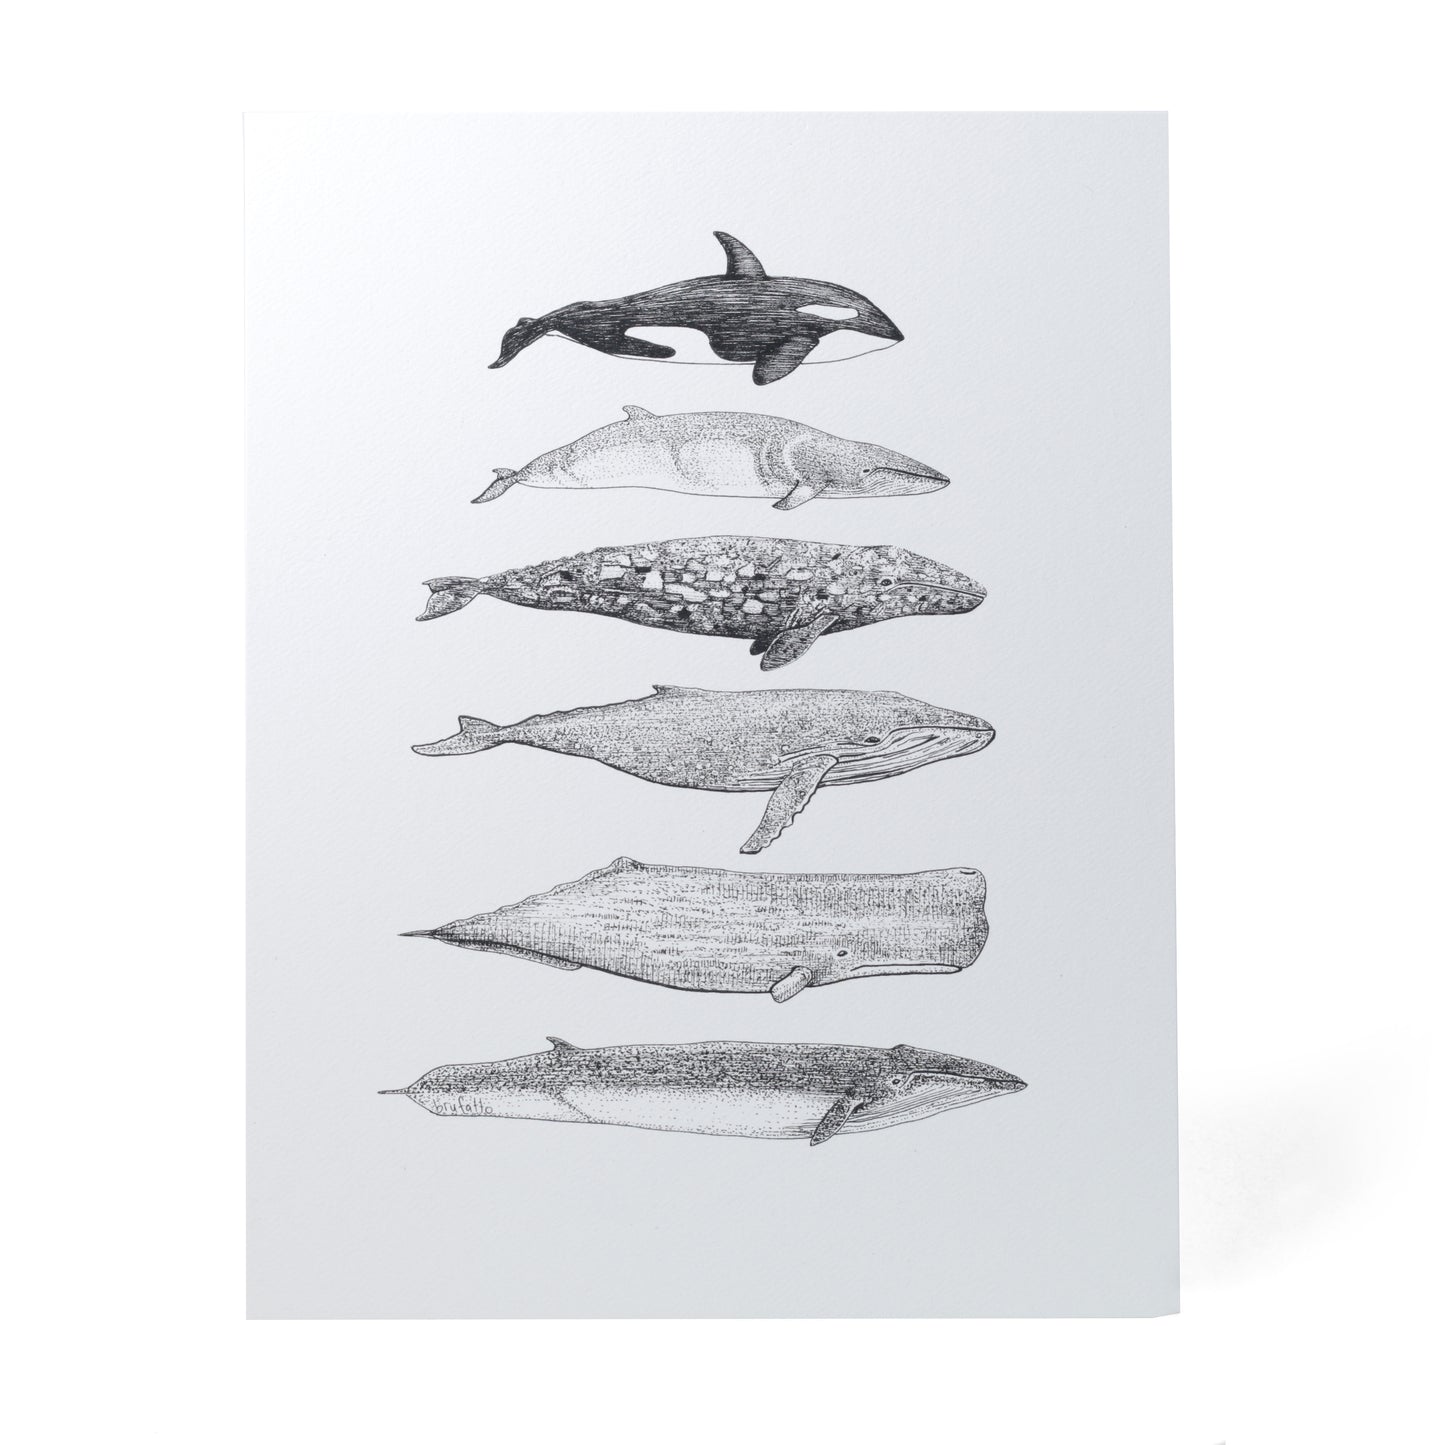 6 Cetacean Species of BC Art